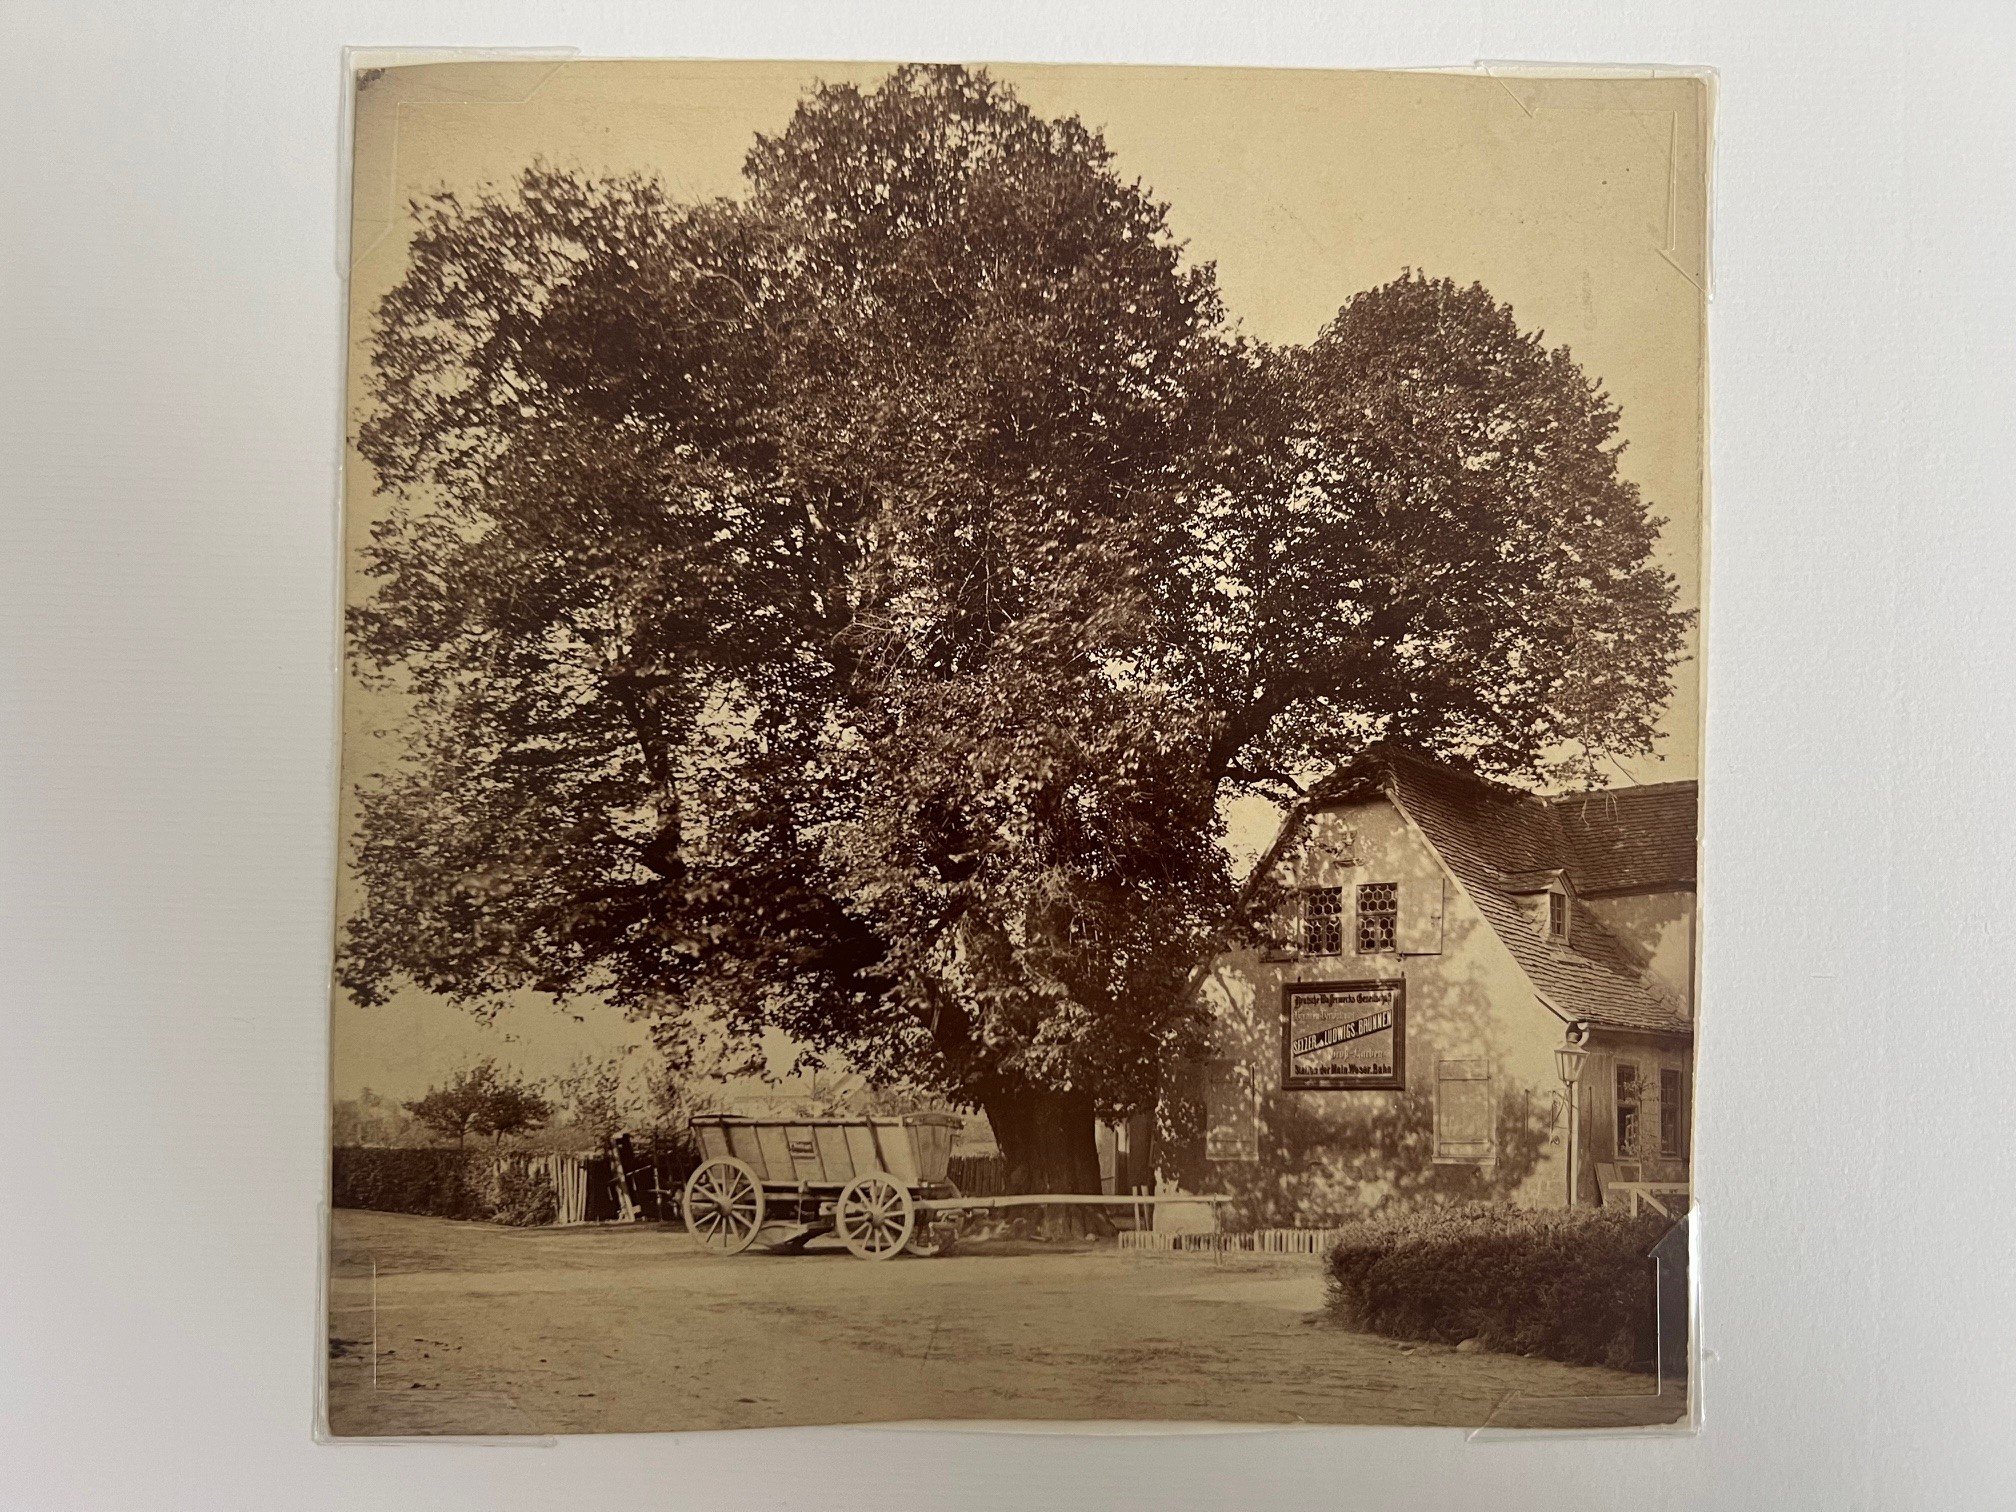 Unbekannter Fotograf, Niederlassung der Firma Seltzer-Brunnen in Karben, ca. 1870. (Taunus-Rhein-Main - Regionalgeschichtliche Sammlung Dr. Stefan Naas CC BY-NC-SA)